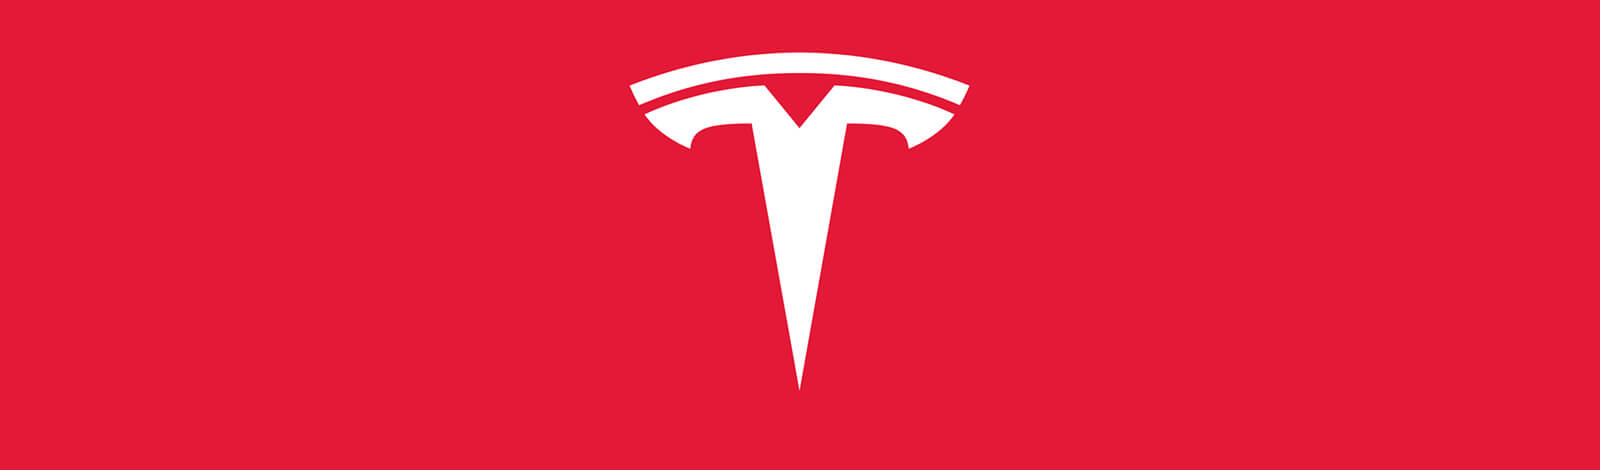 Toyota sells Tesla stock